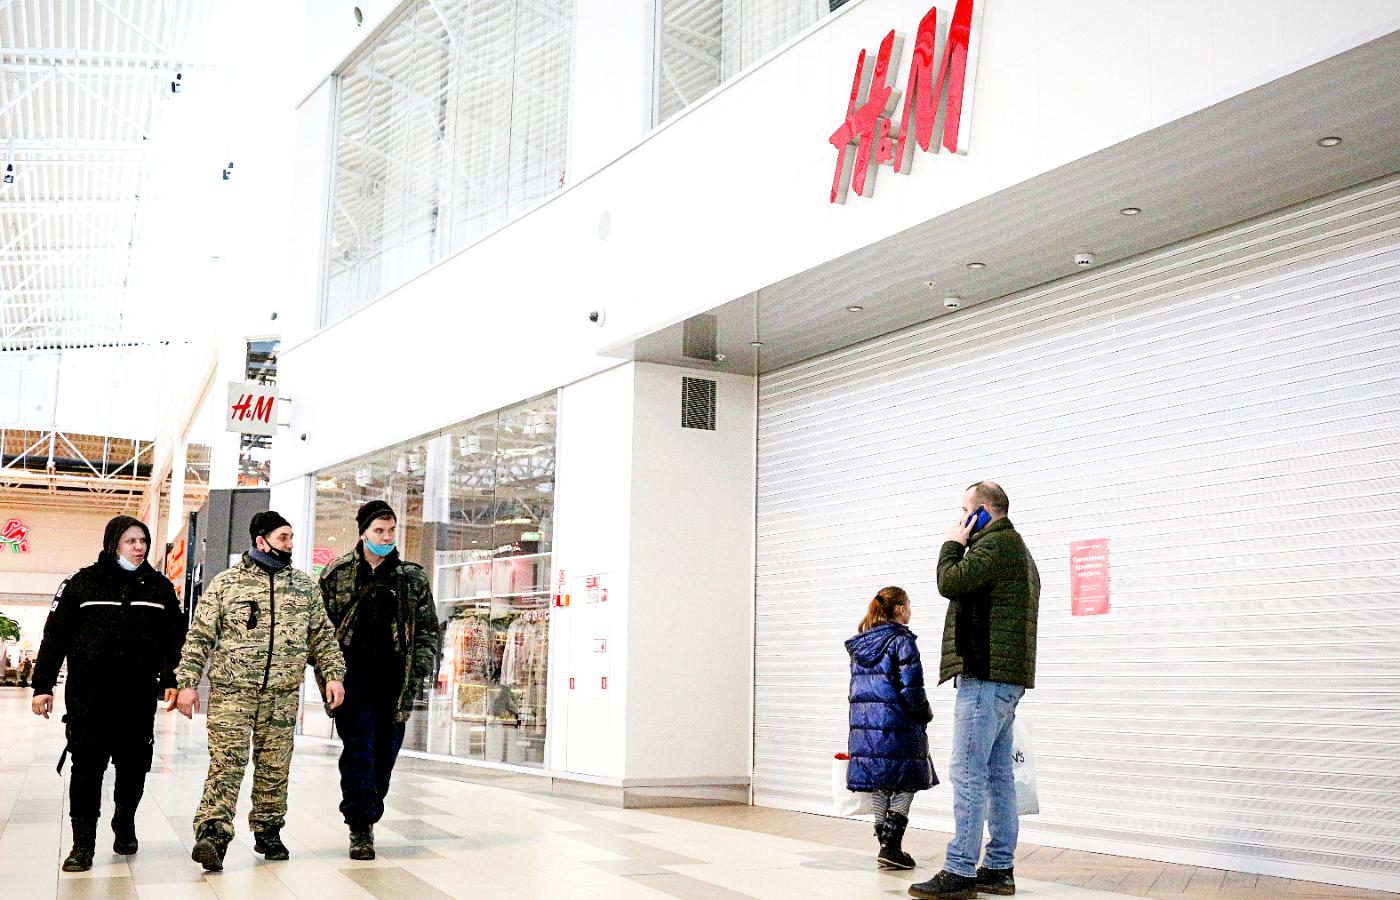 Zamknięty sklep sieci H&M w Rosji, Omsk, 2 marca 2022 r.